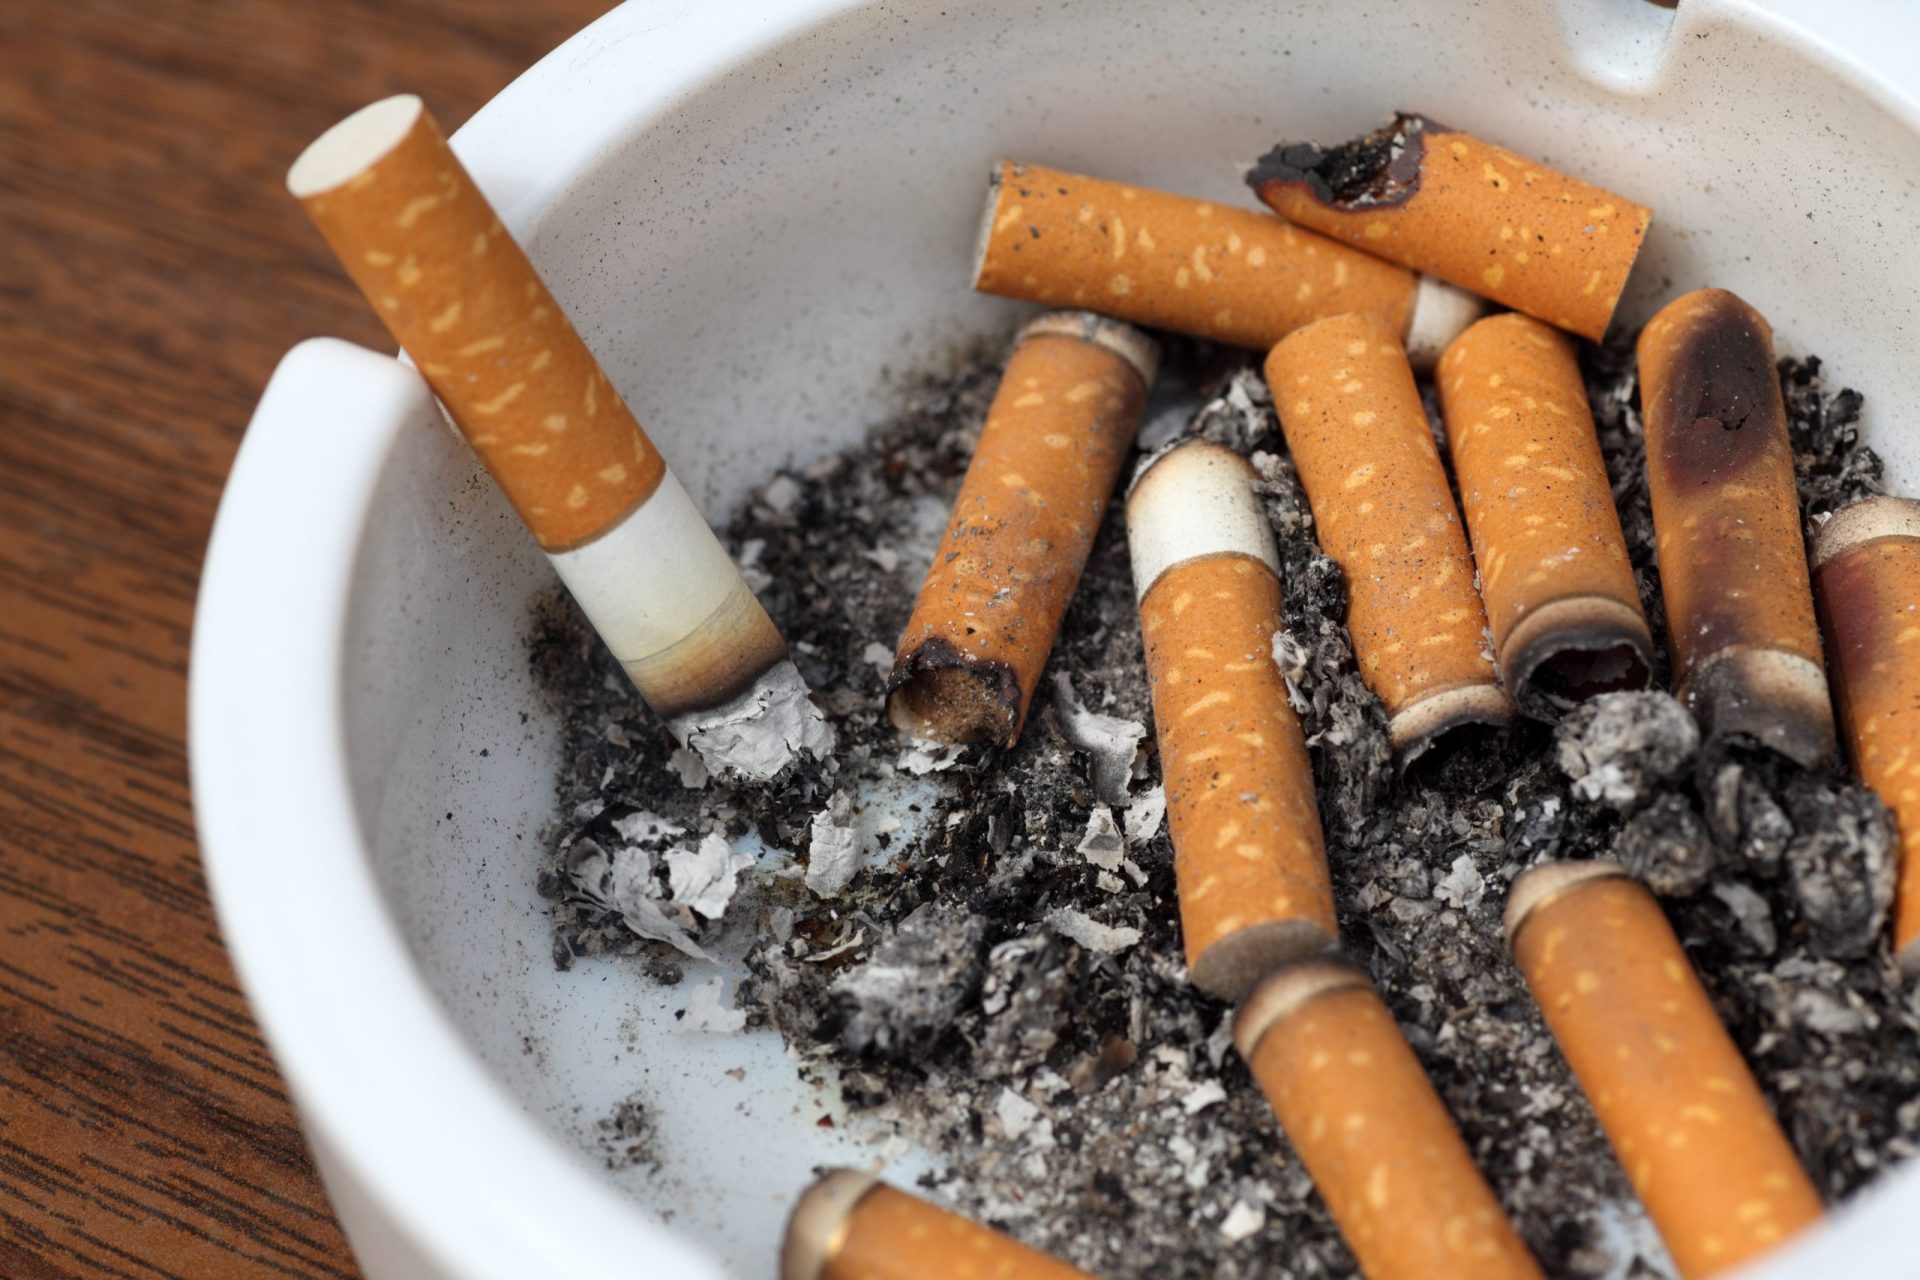 Associação portuguesa apoia governo do Uruguai contra multinacional tabaqueira